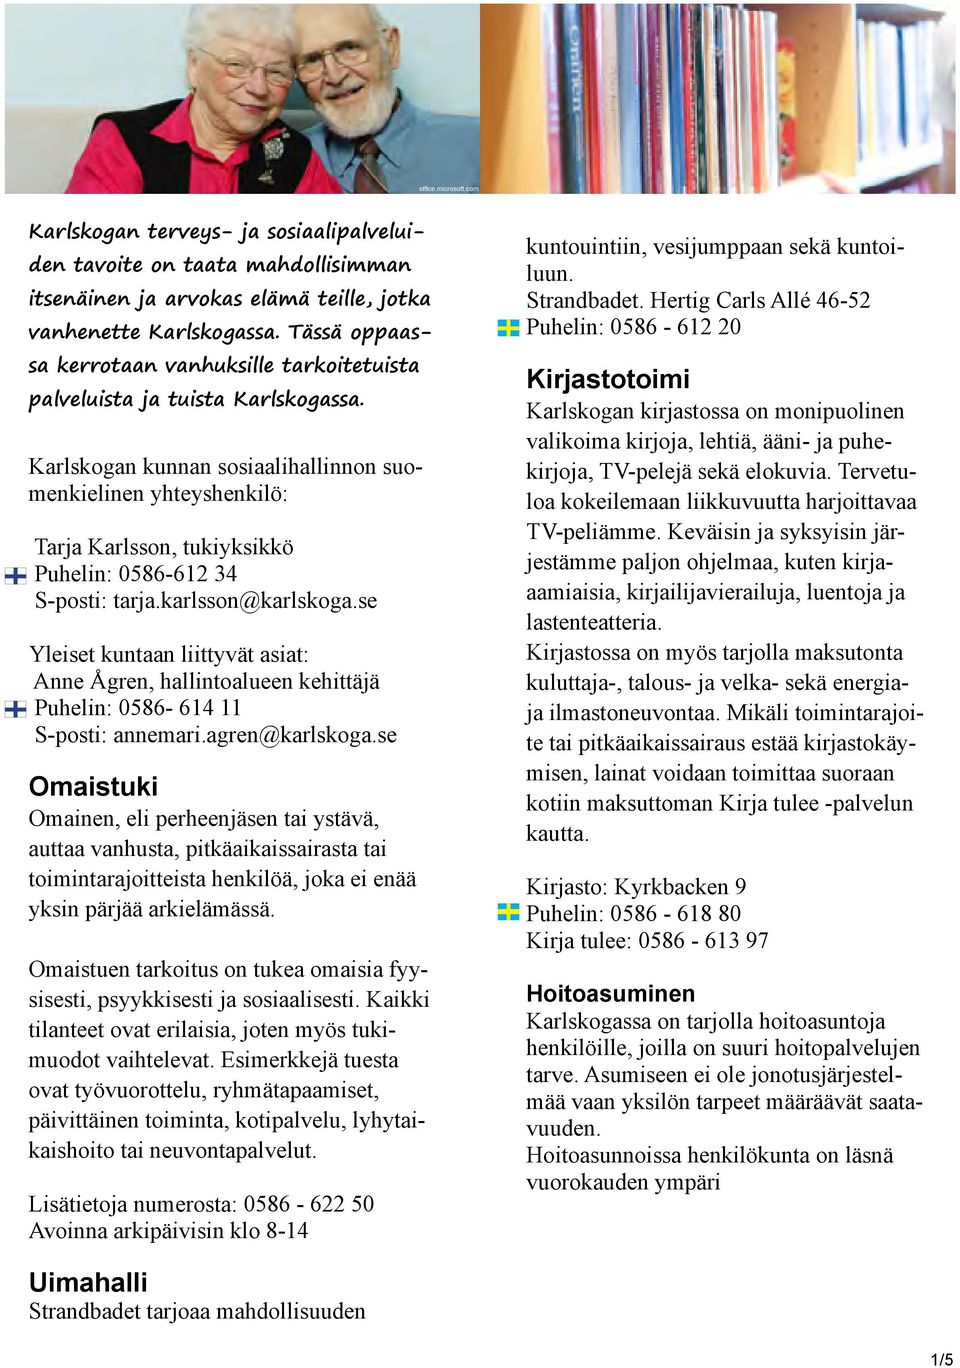 Karlskogan kunnan sosiaalihallinnon suomenkielinen yhteyshenkilö: Tarja Karlsson, tukiyksikkö Puhelin: 0586-612 34 S-posti: tarja.karlsson@karlskoga.